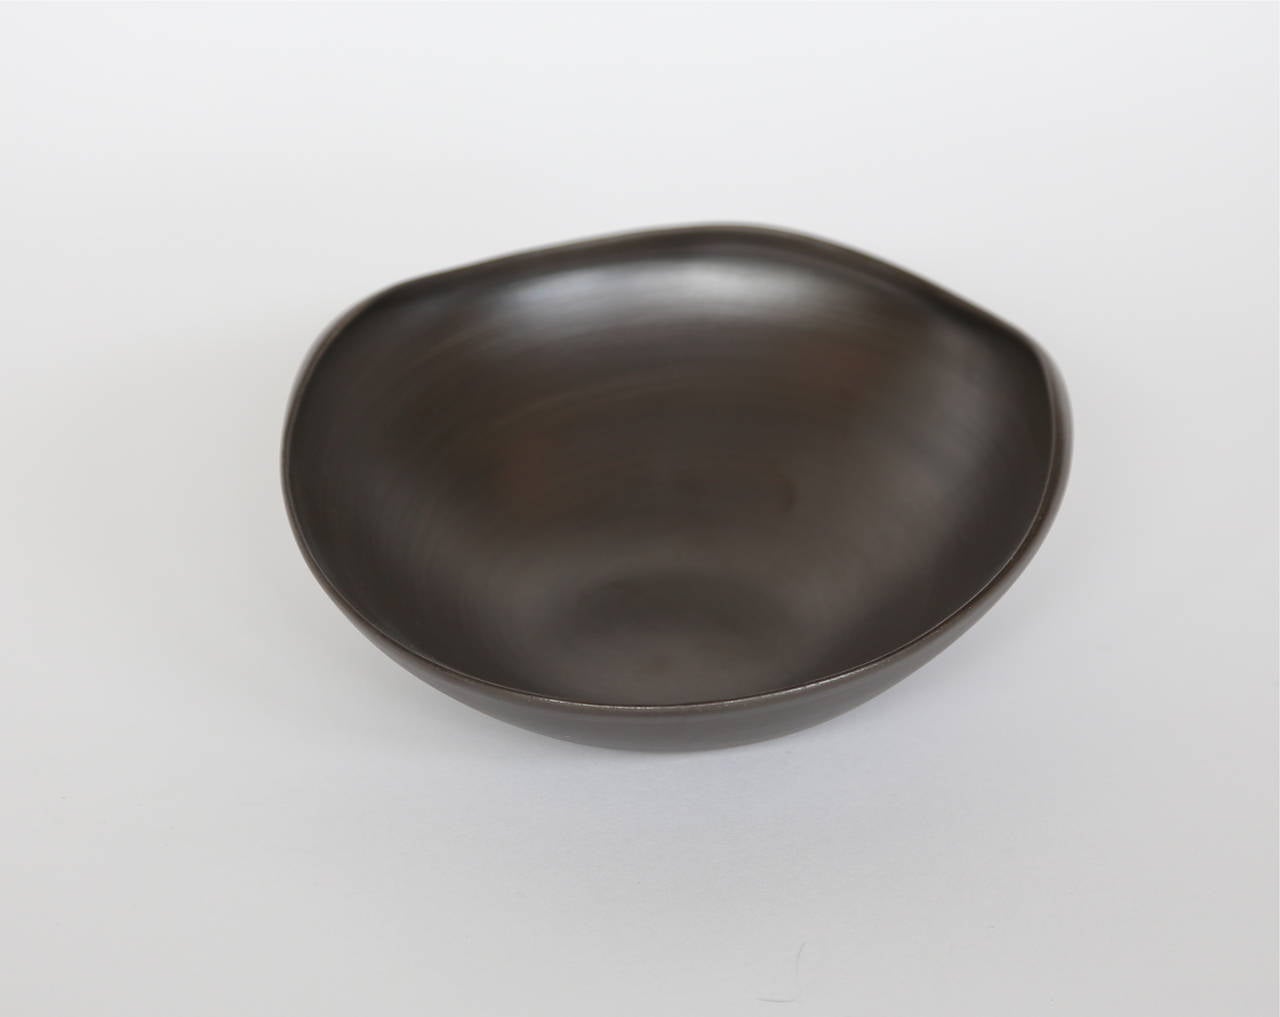 Hand-Crafted Rina Menardi Handmade Ceramic Conch Bowls For Sale